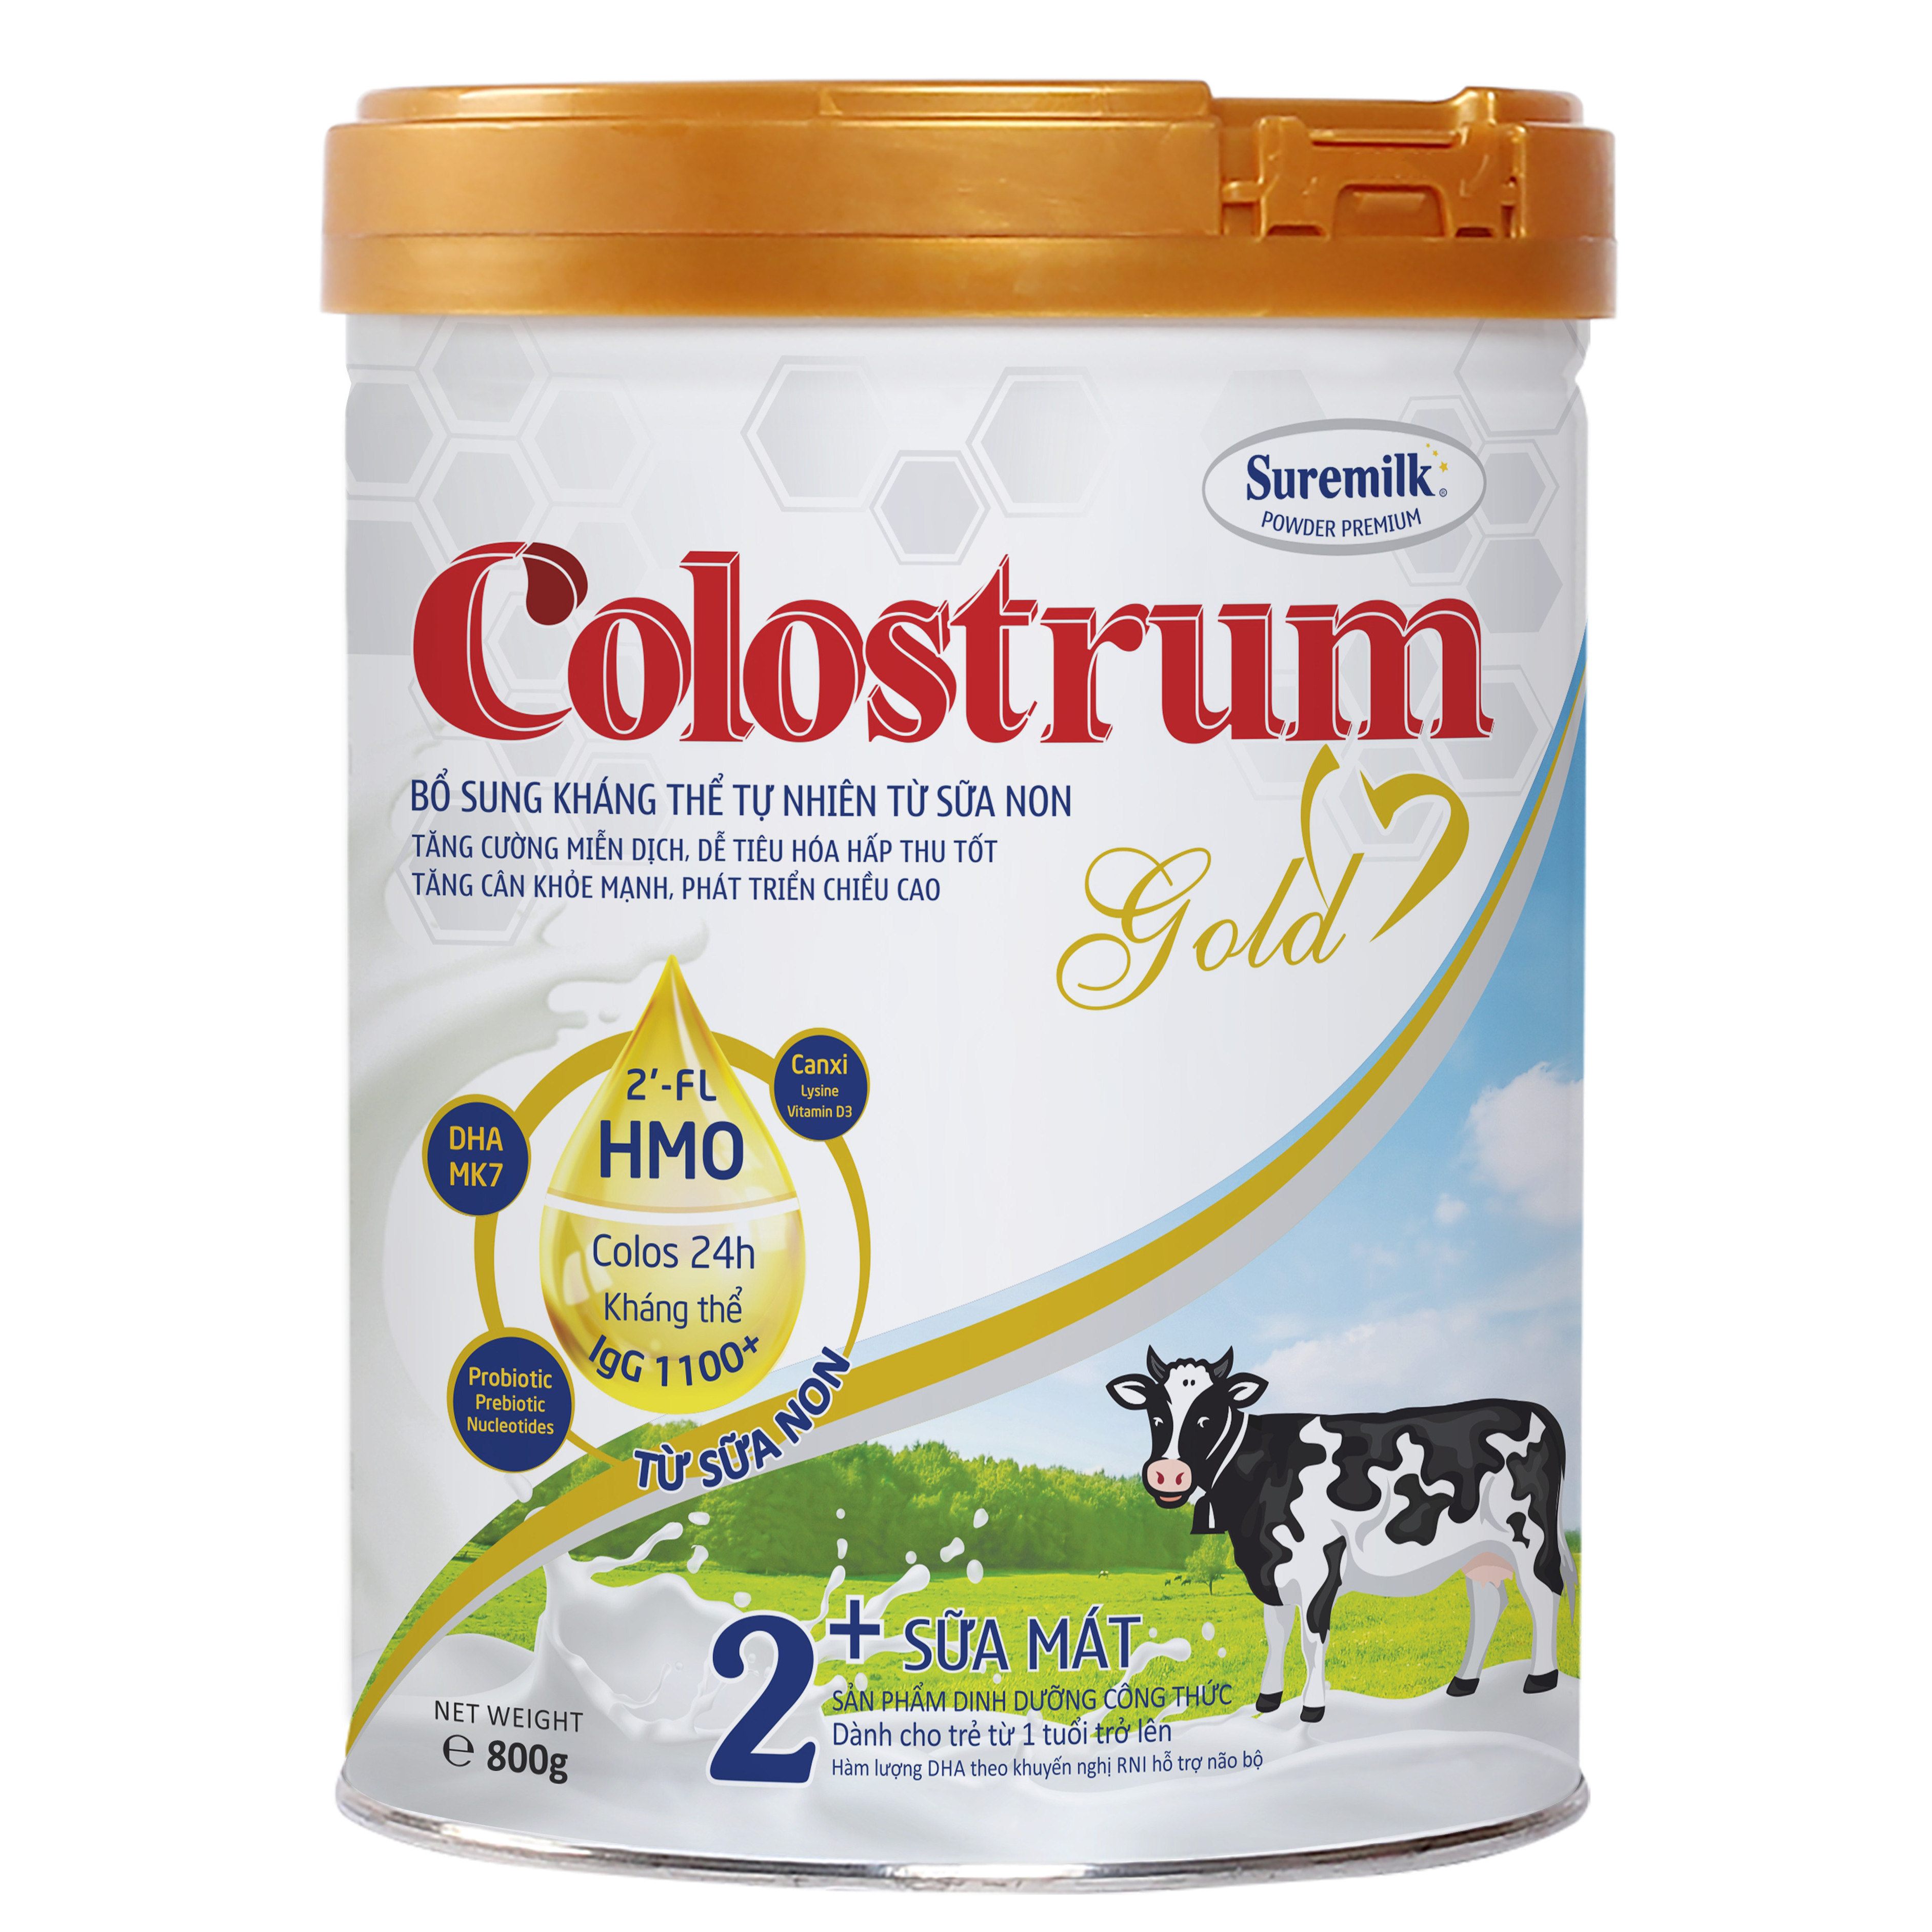 Sữa non Colostrum Powder Premium Gold 2+ 800g (dành cho trẻ từ 1 tuổi trở lên)